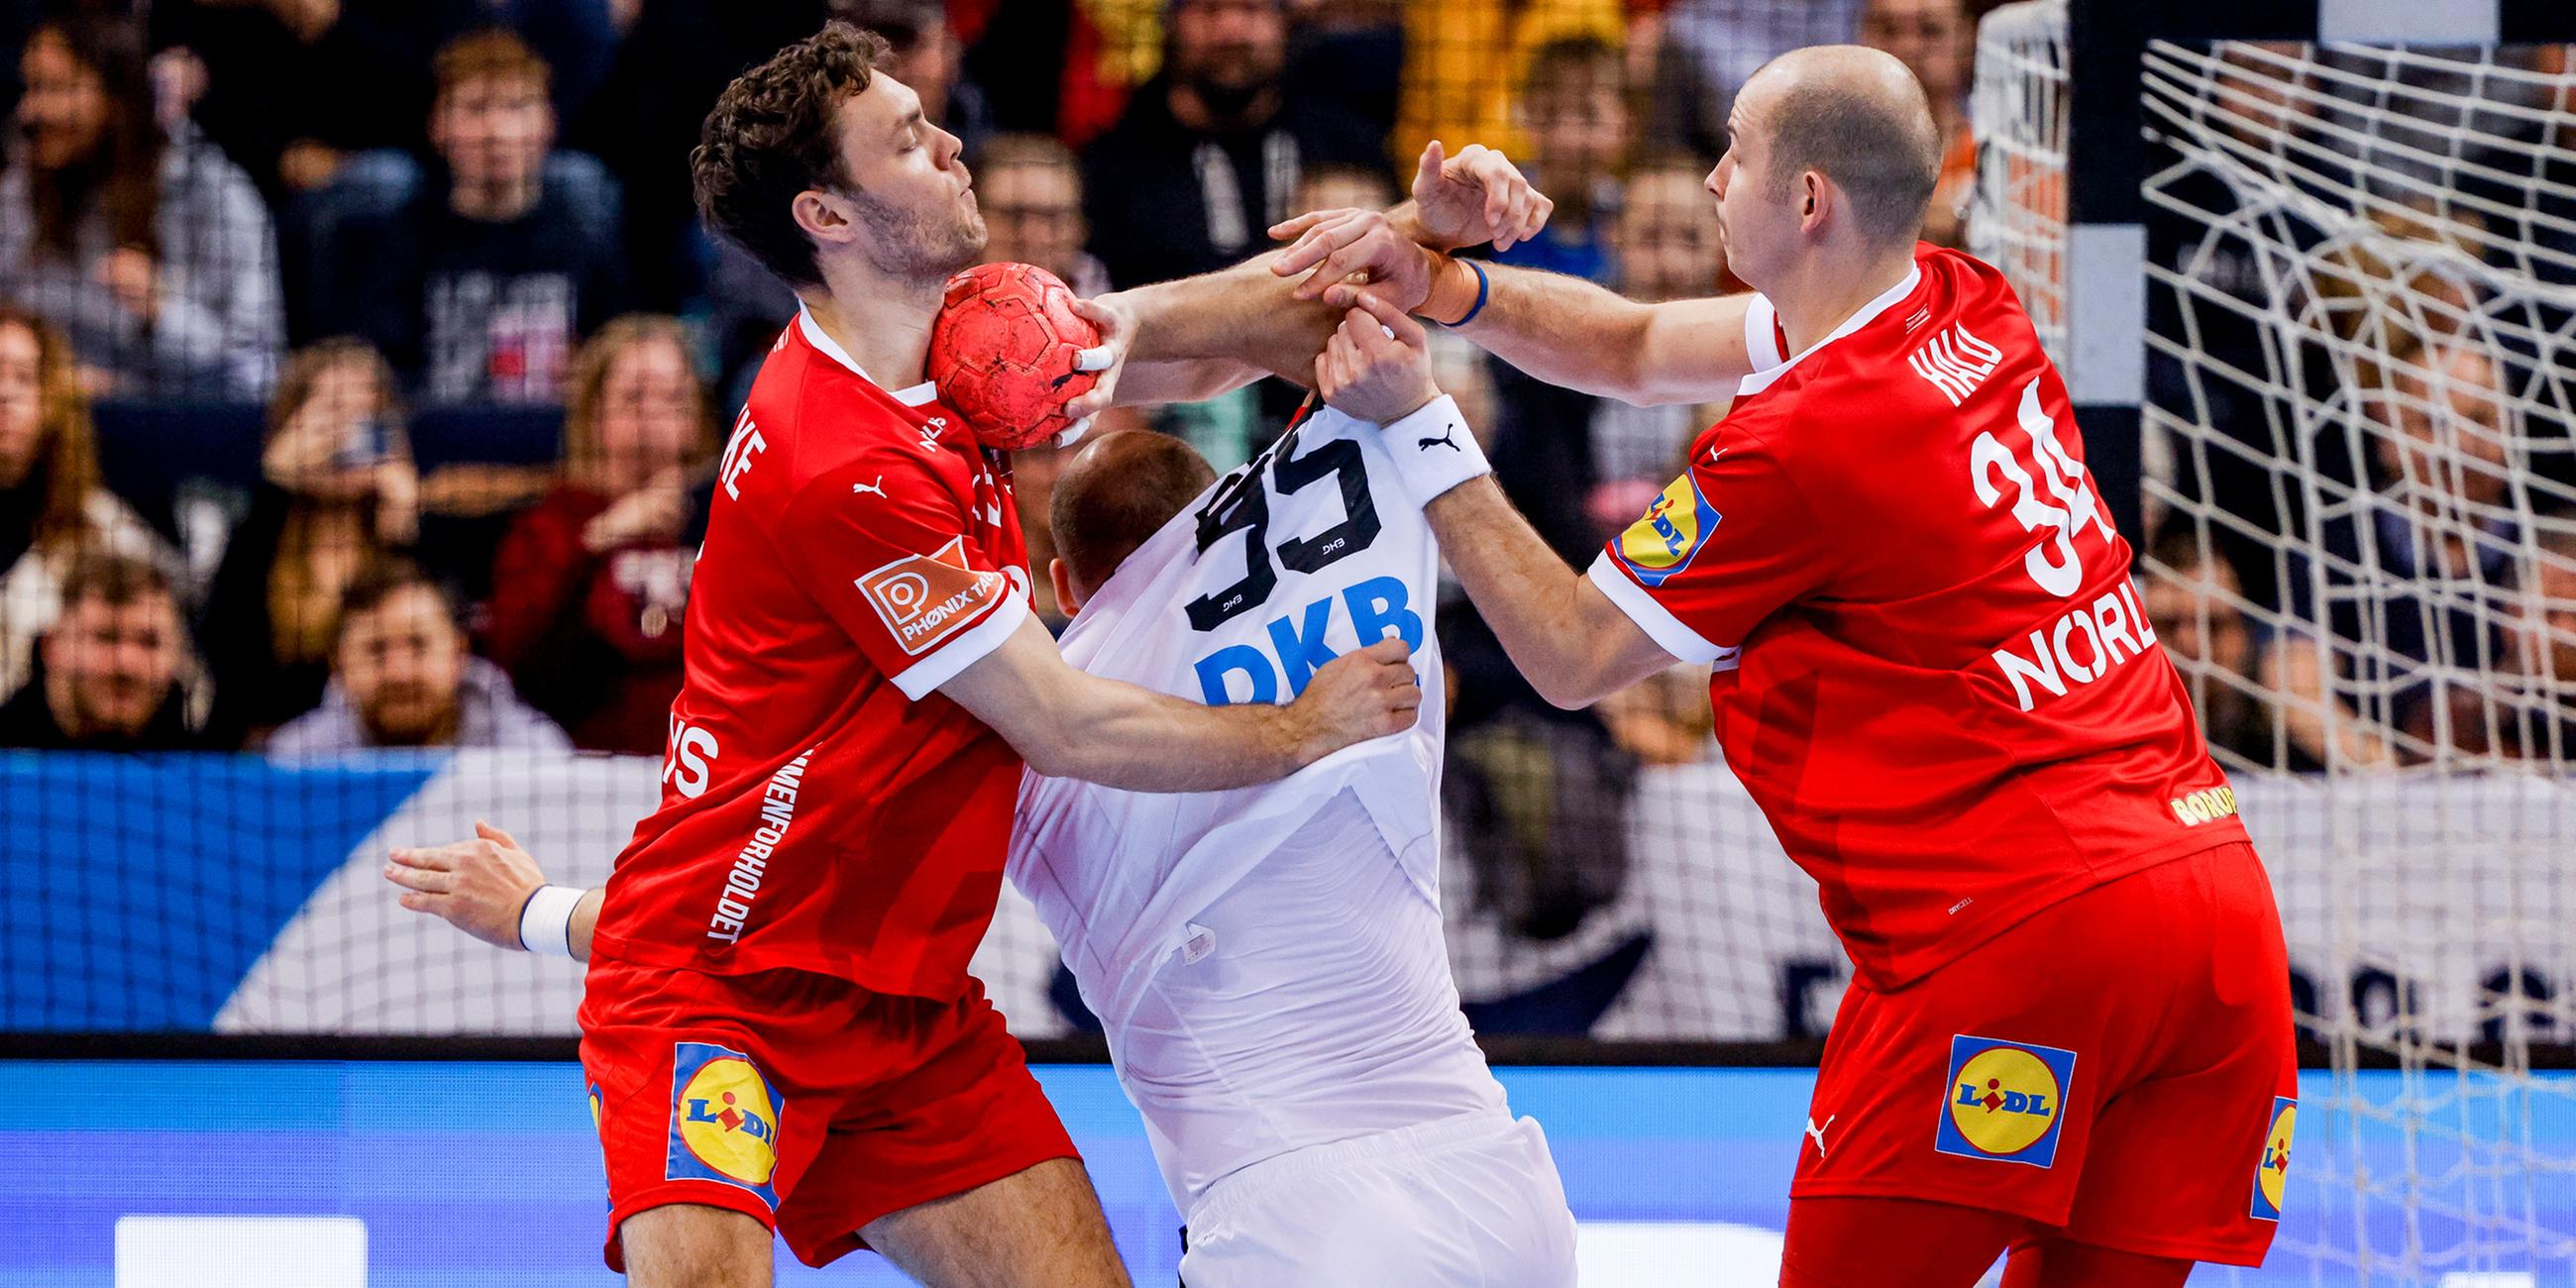 Dänemarks Niklas Kirkelokke (l-r), Deutschlands Paul Drux und Dänemarks Simon Hald Jensen kämpfen um den Ball.